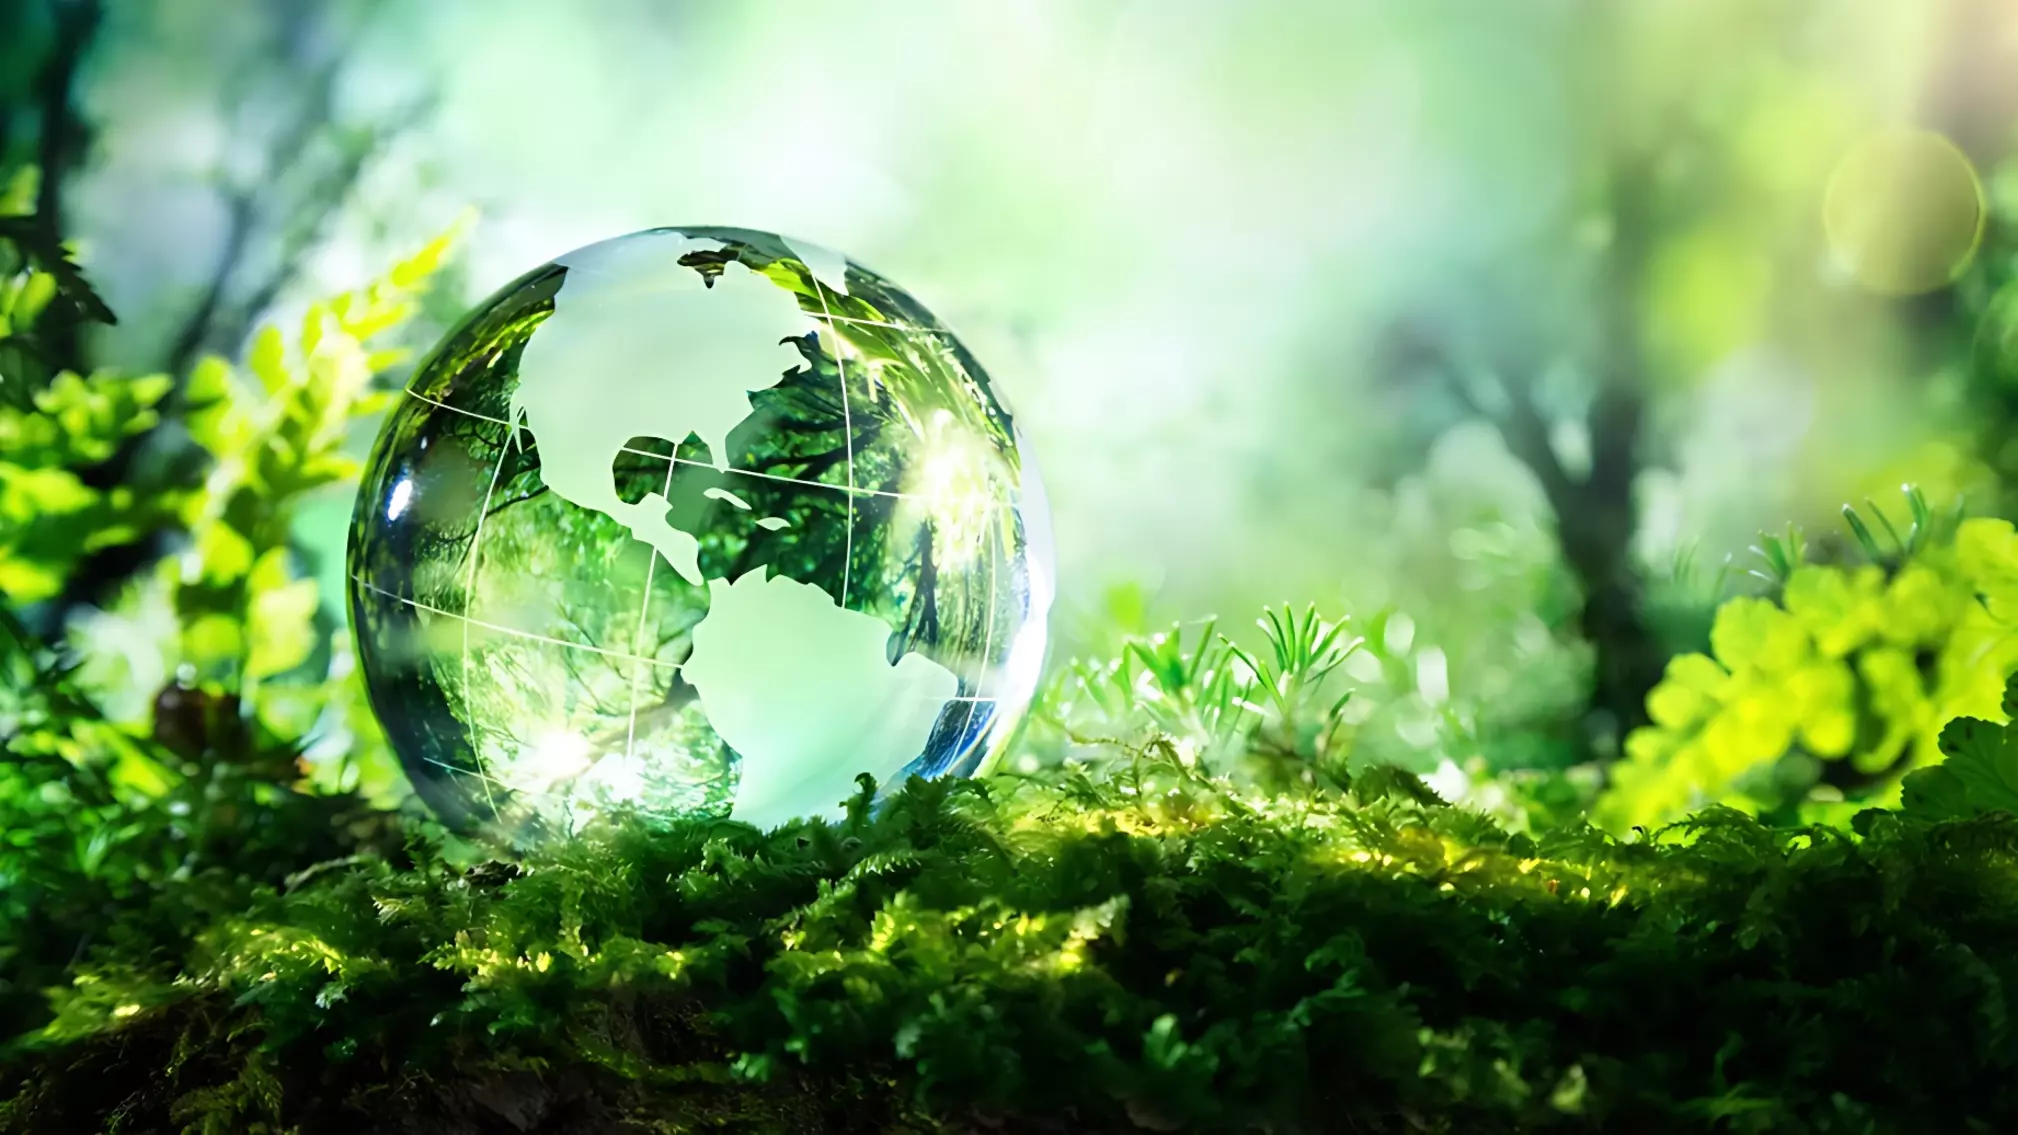 Фонд «Экология» РСХБ рассказал, как провести майские праздники без вреда для экологии